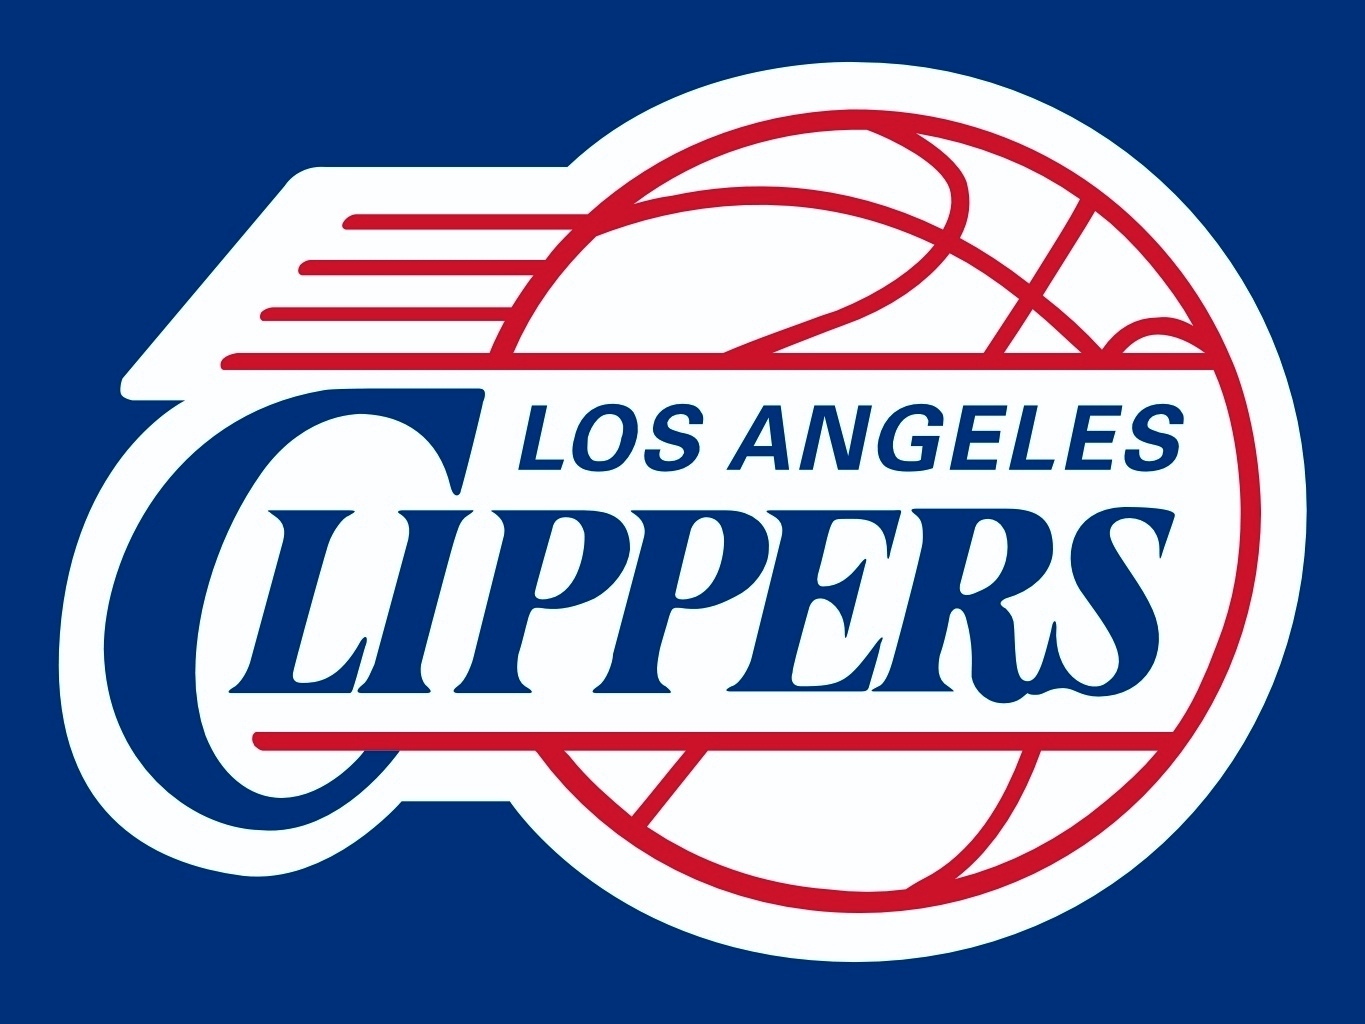 Los peores logos de la NBA por viva basquet